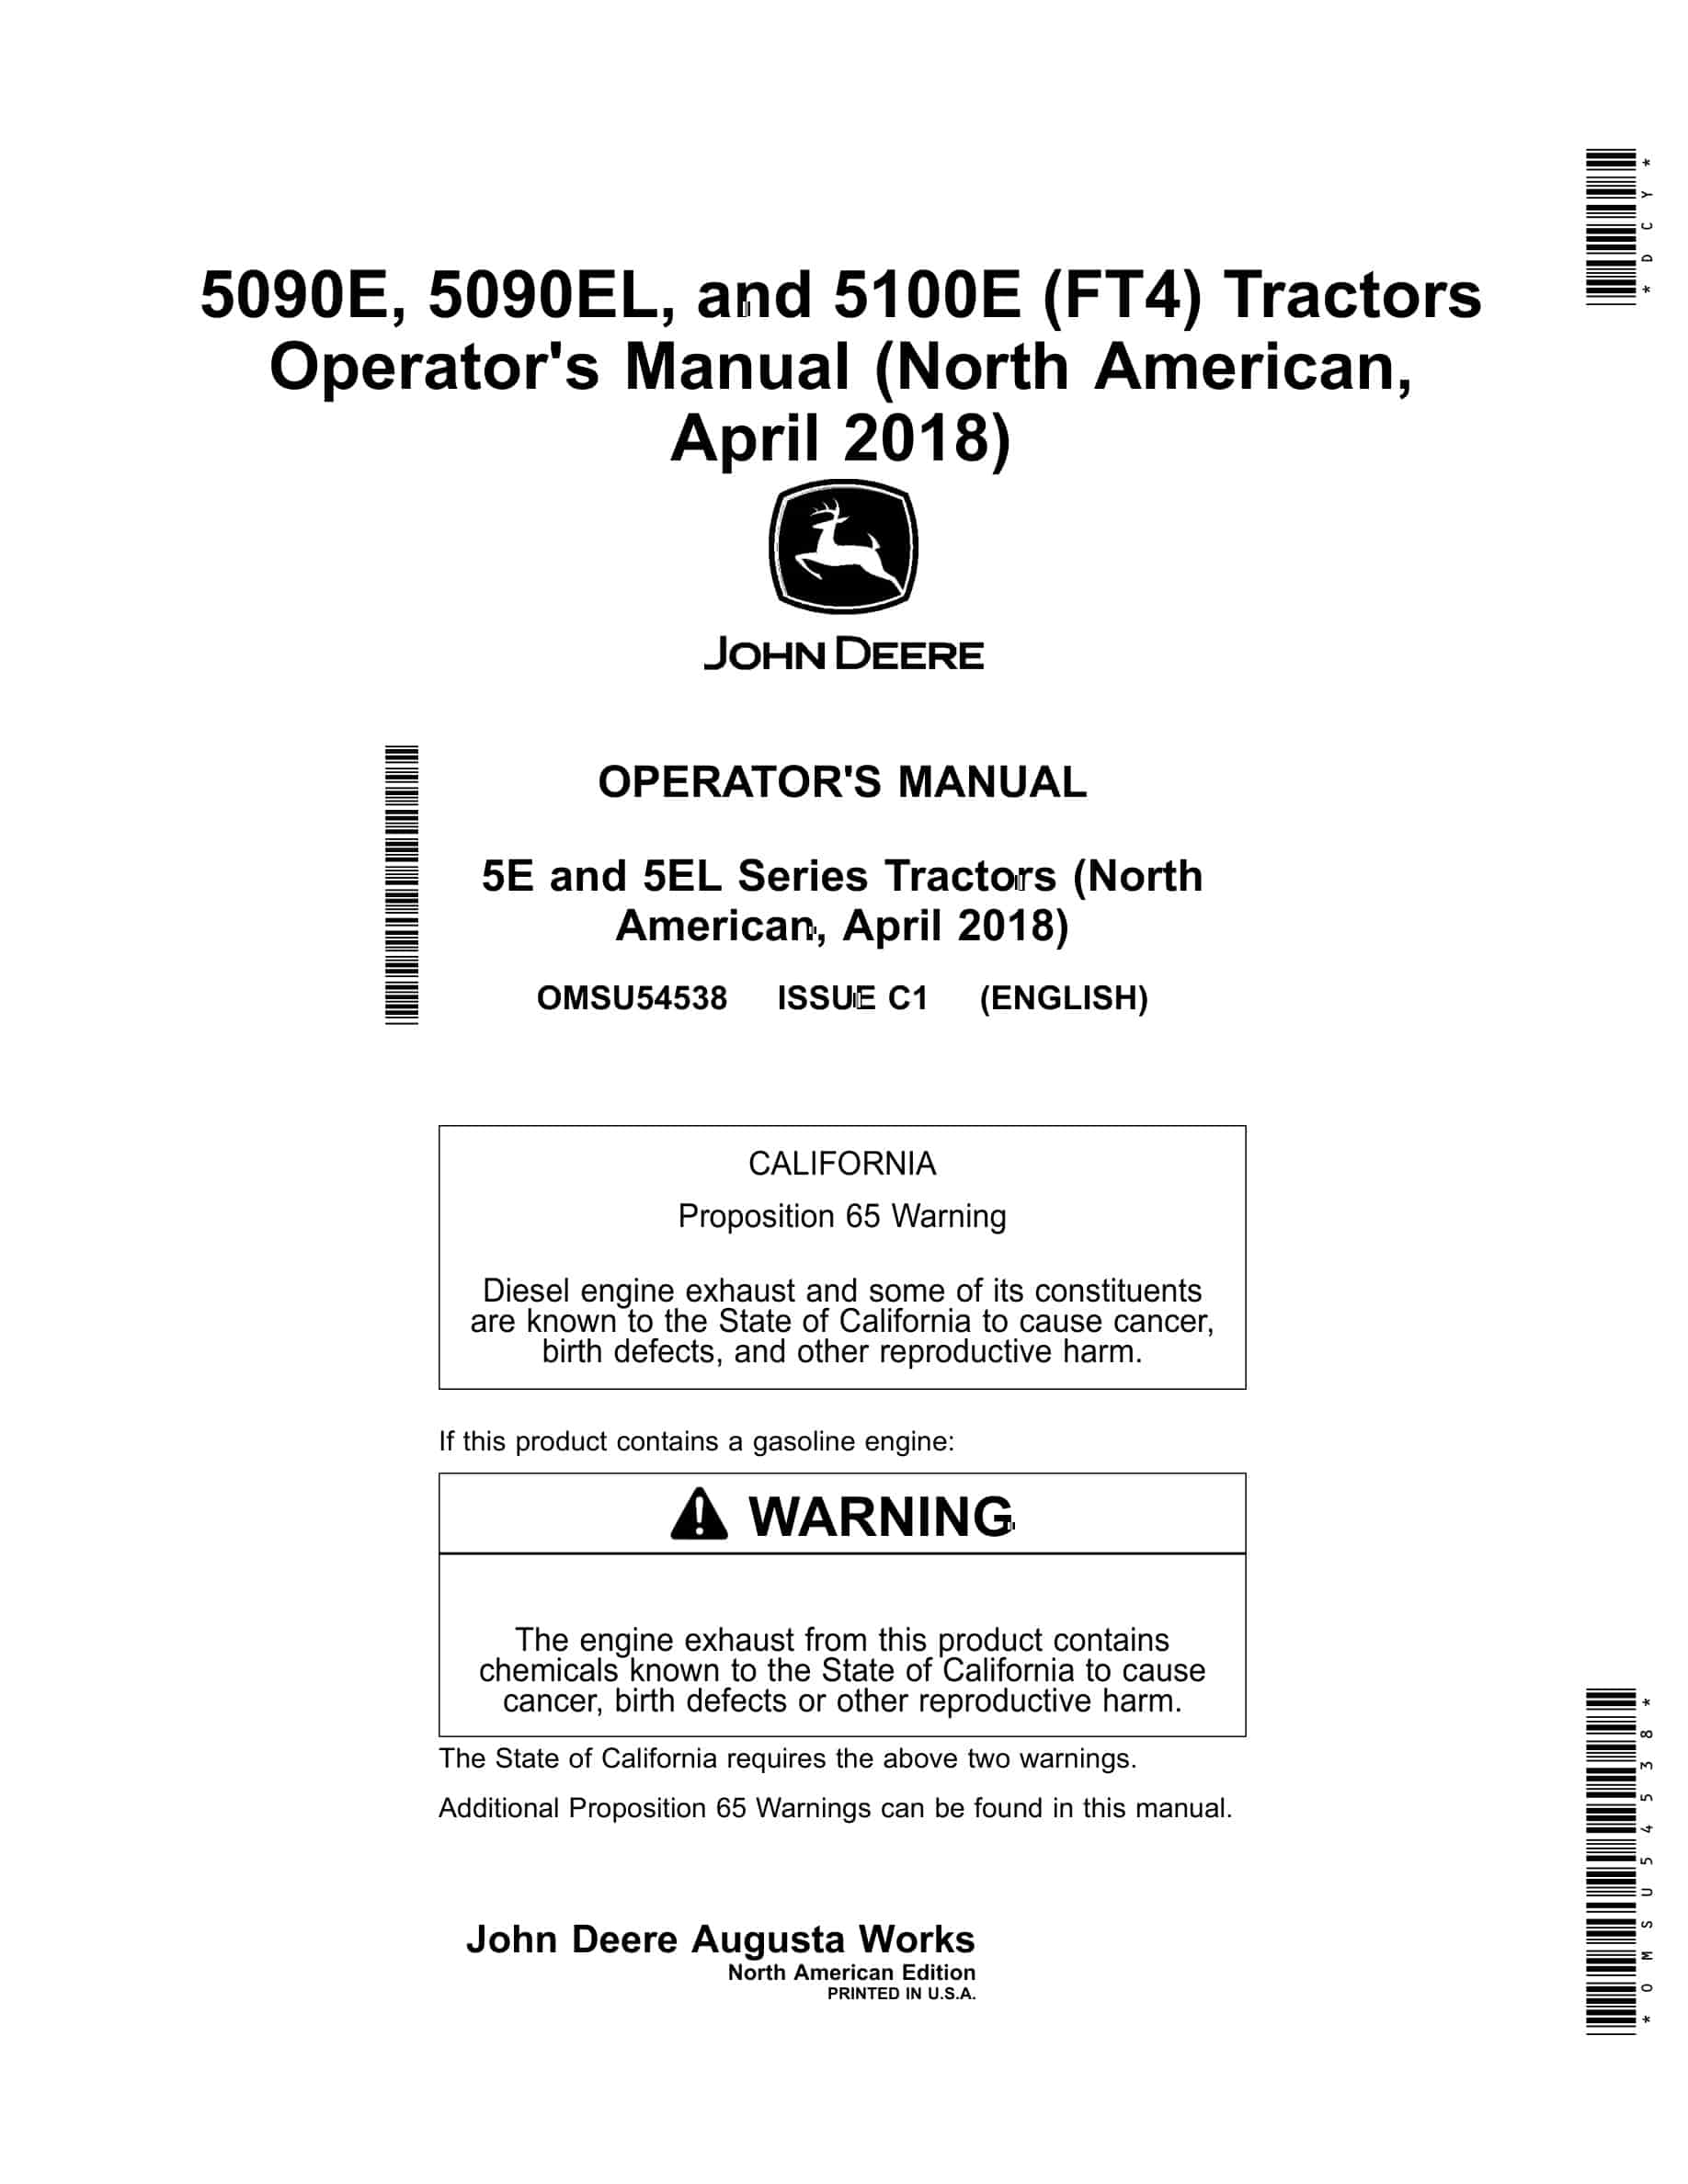 John Deere 5090E, 5090EL, and 5100E (FT4) 5E and 5EL Series Tractor Operator Manual OMSU54538-1